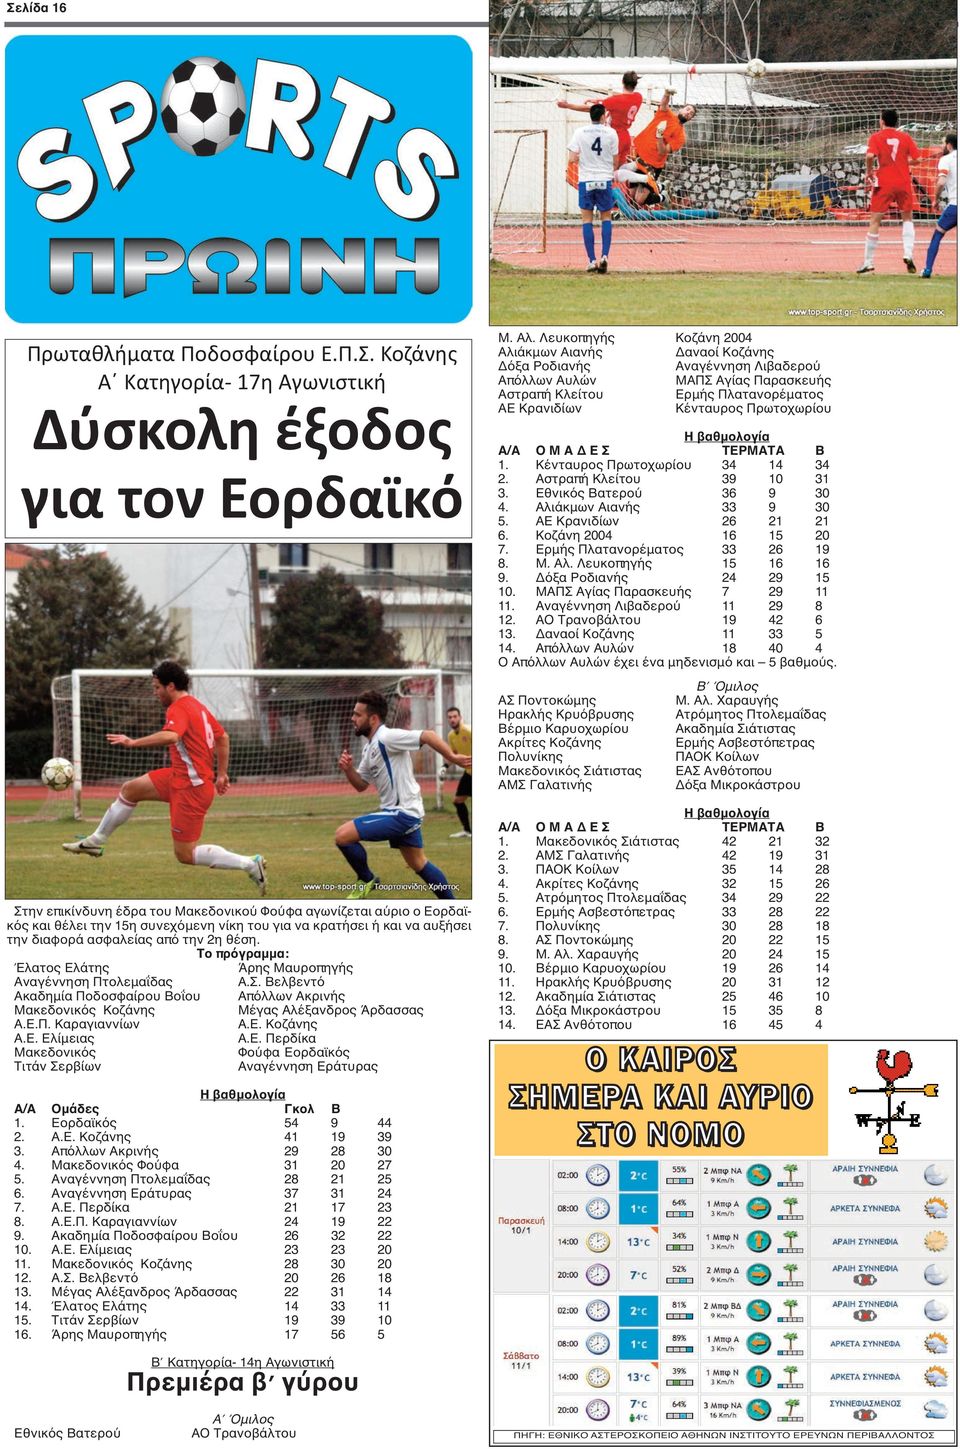 Βελβεντό Ακαδημία Ποδοσφαίρου Βοΐου Απόλλων Ακρινής Μακεδονικός Κοζάνης Μέγας Αλέξανδρος Άρδασσας Α.Ε.